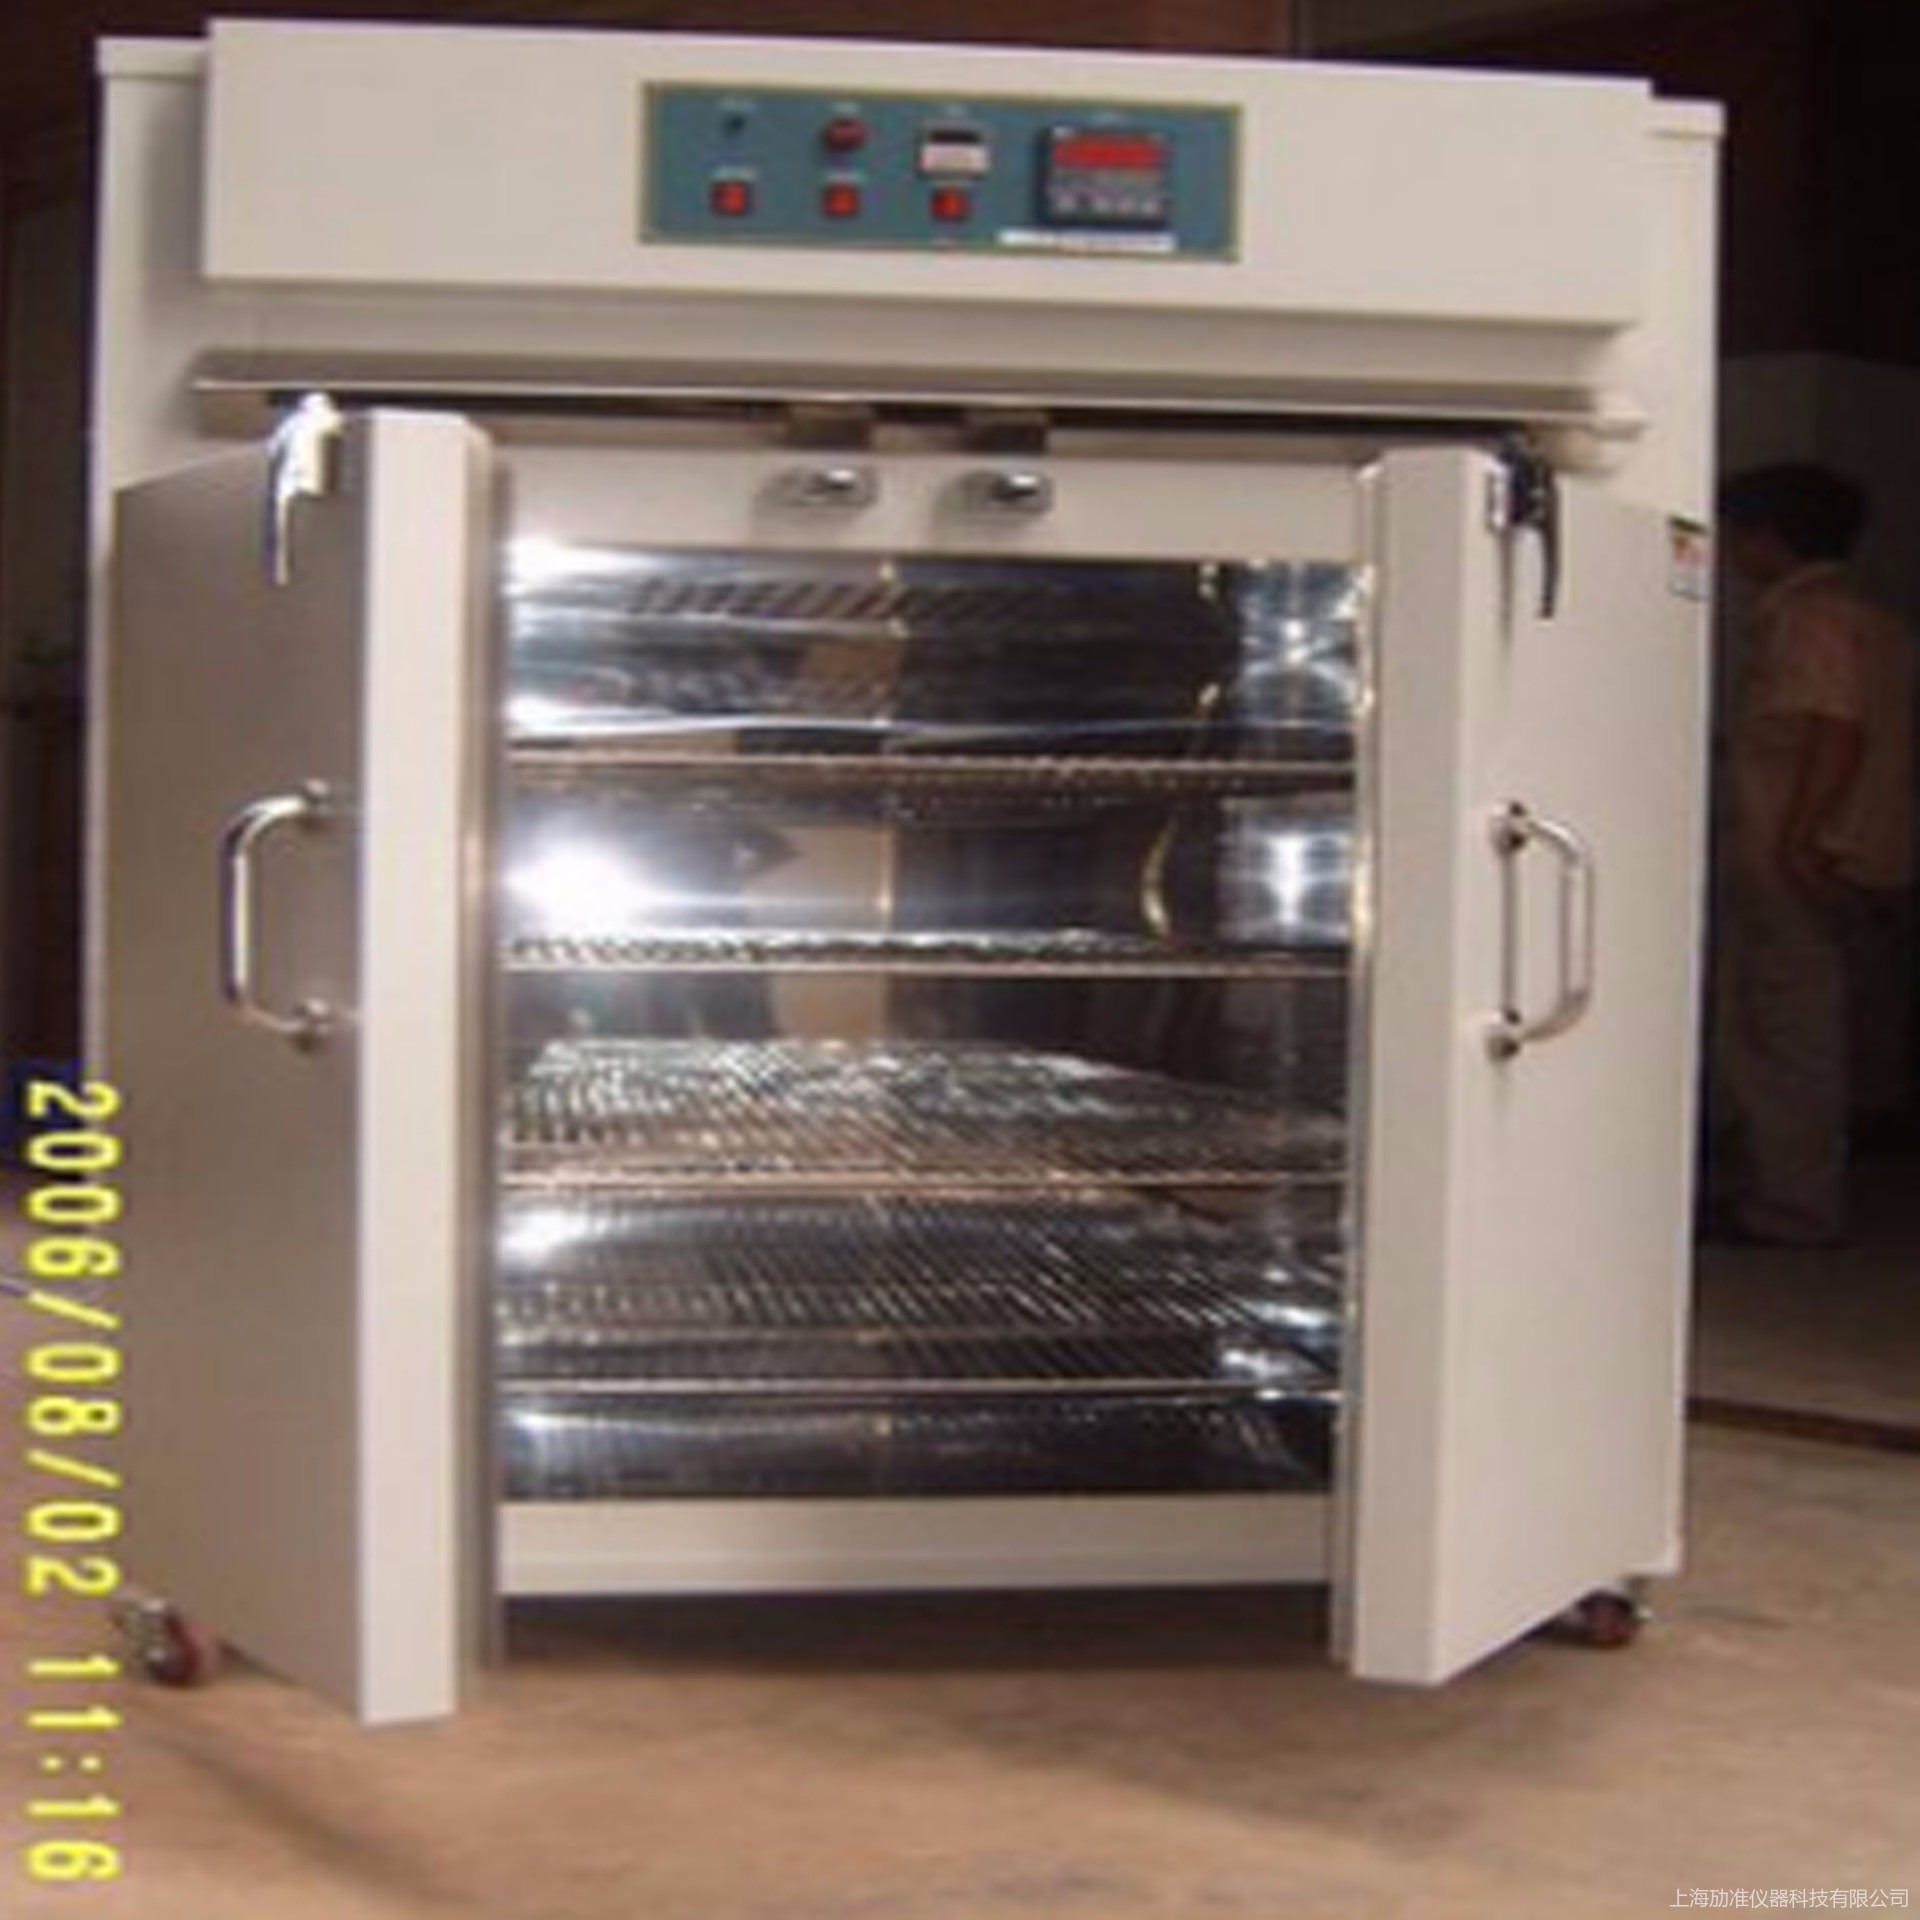 劢准 MZ-B107 高温试验箱 可非标定制 大型烘箱 干燥箱 高温老化箱图片